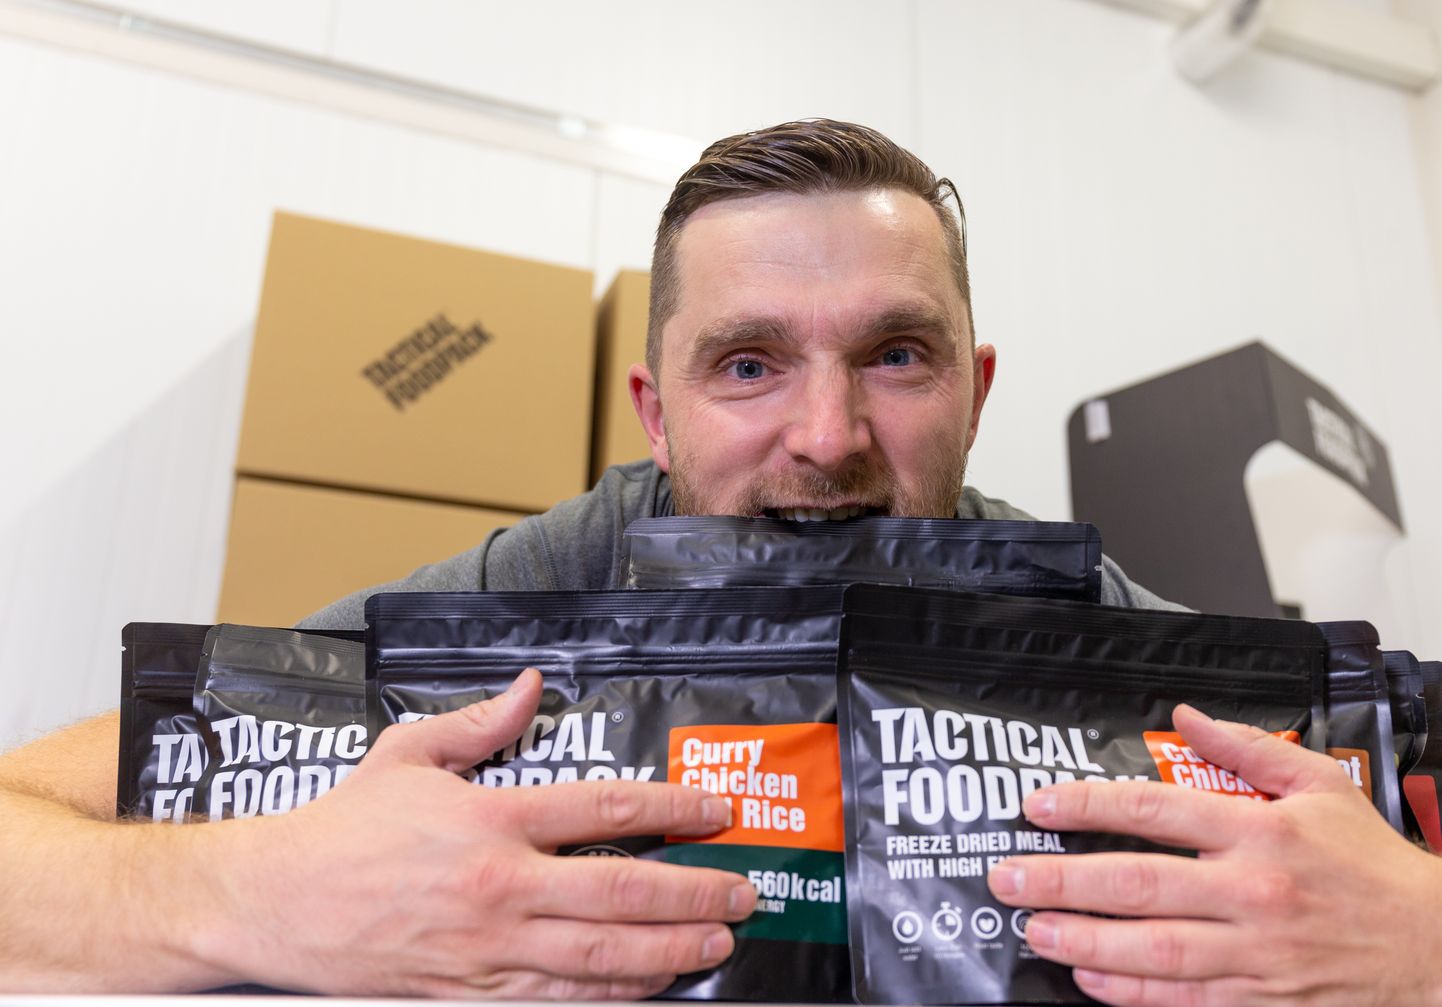 Tactical Foodpacki nime kandvat toidupakki arendava firma Tactical Solution OÜ tegevjuht Sverre Puustusmaa.